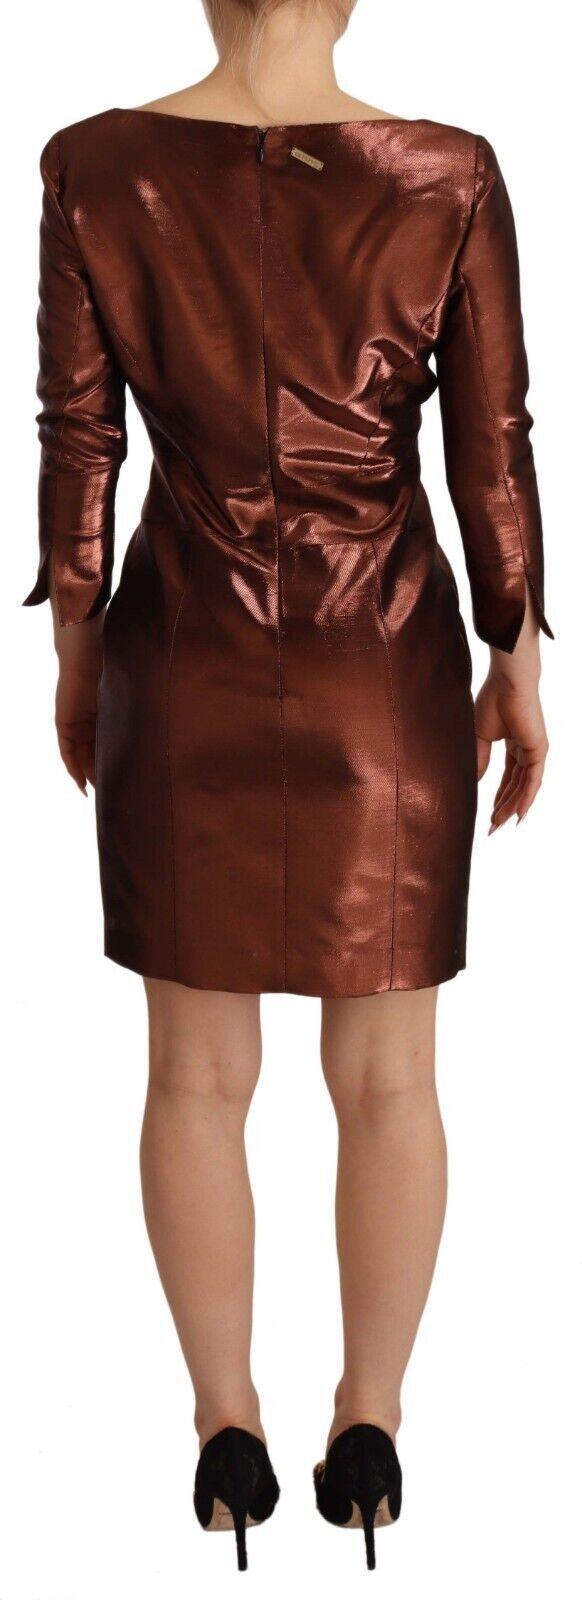 GF Ferre Elegant Bronze Sheath Mini Dress with Square Neck - PER.FASHION